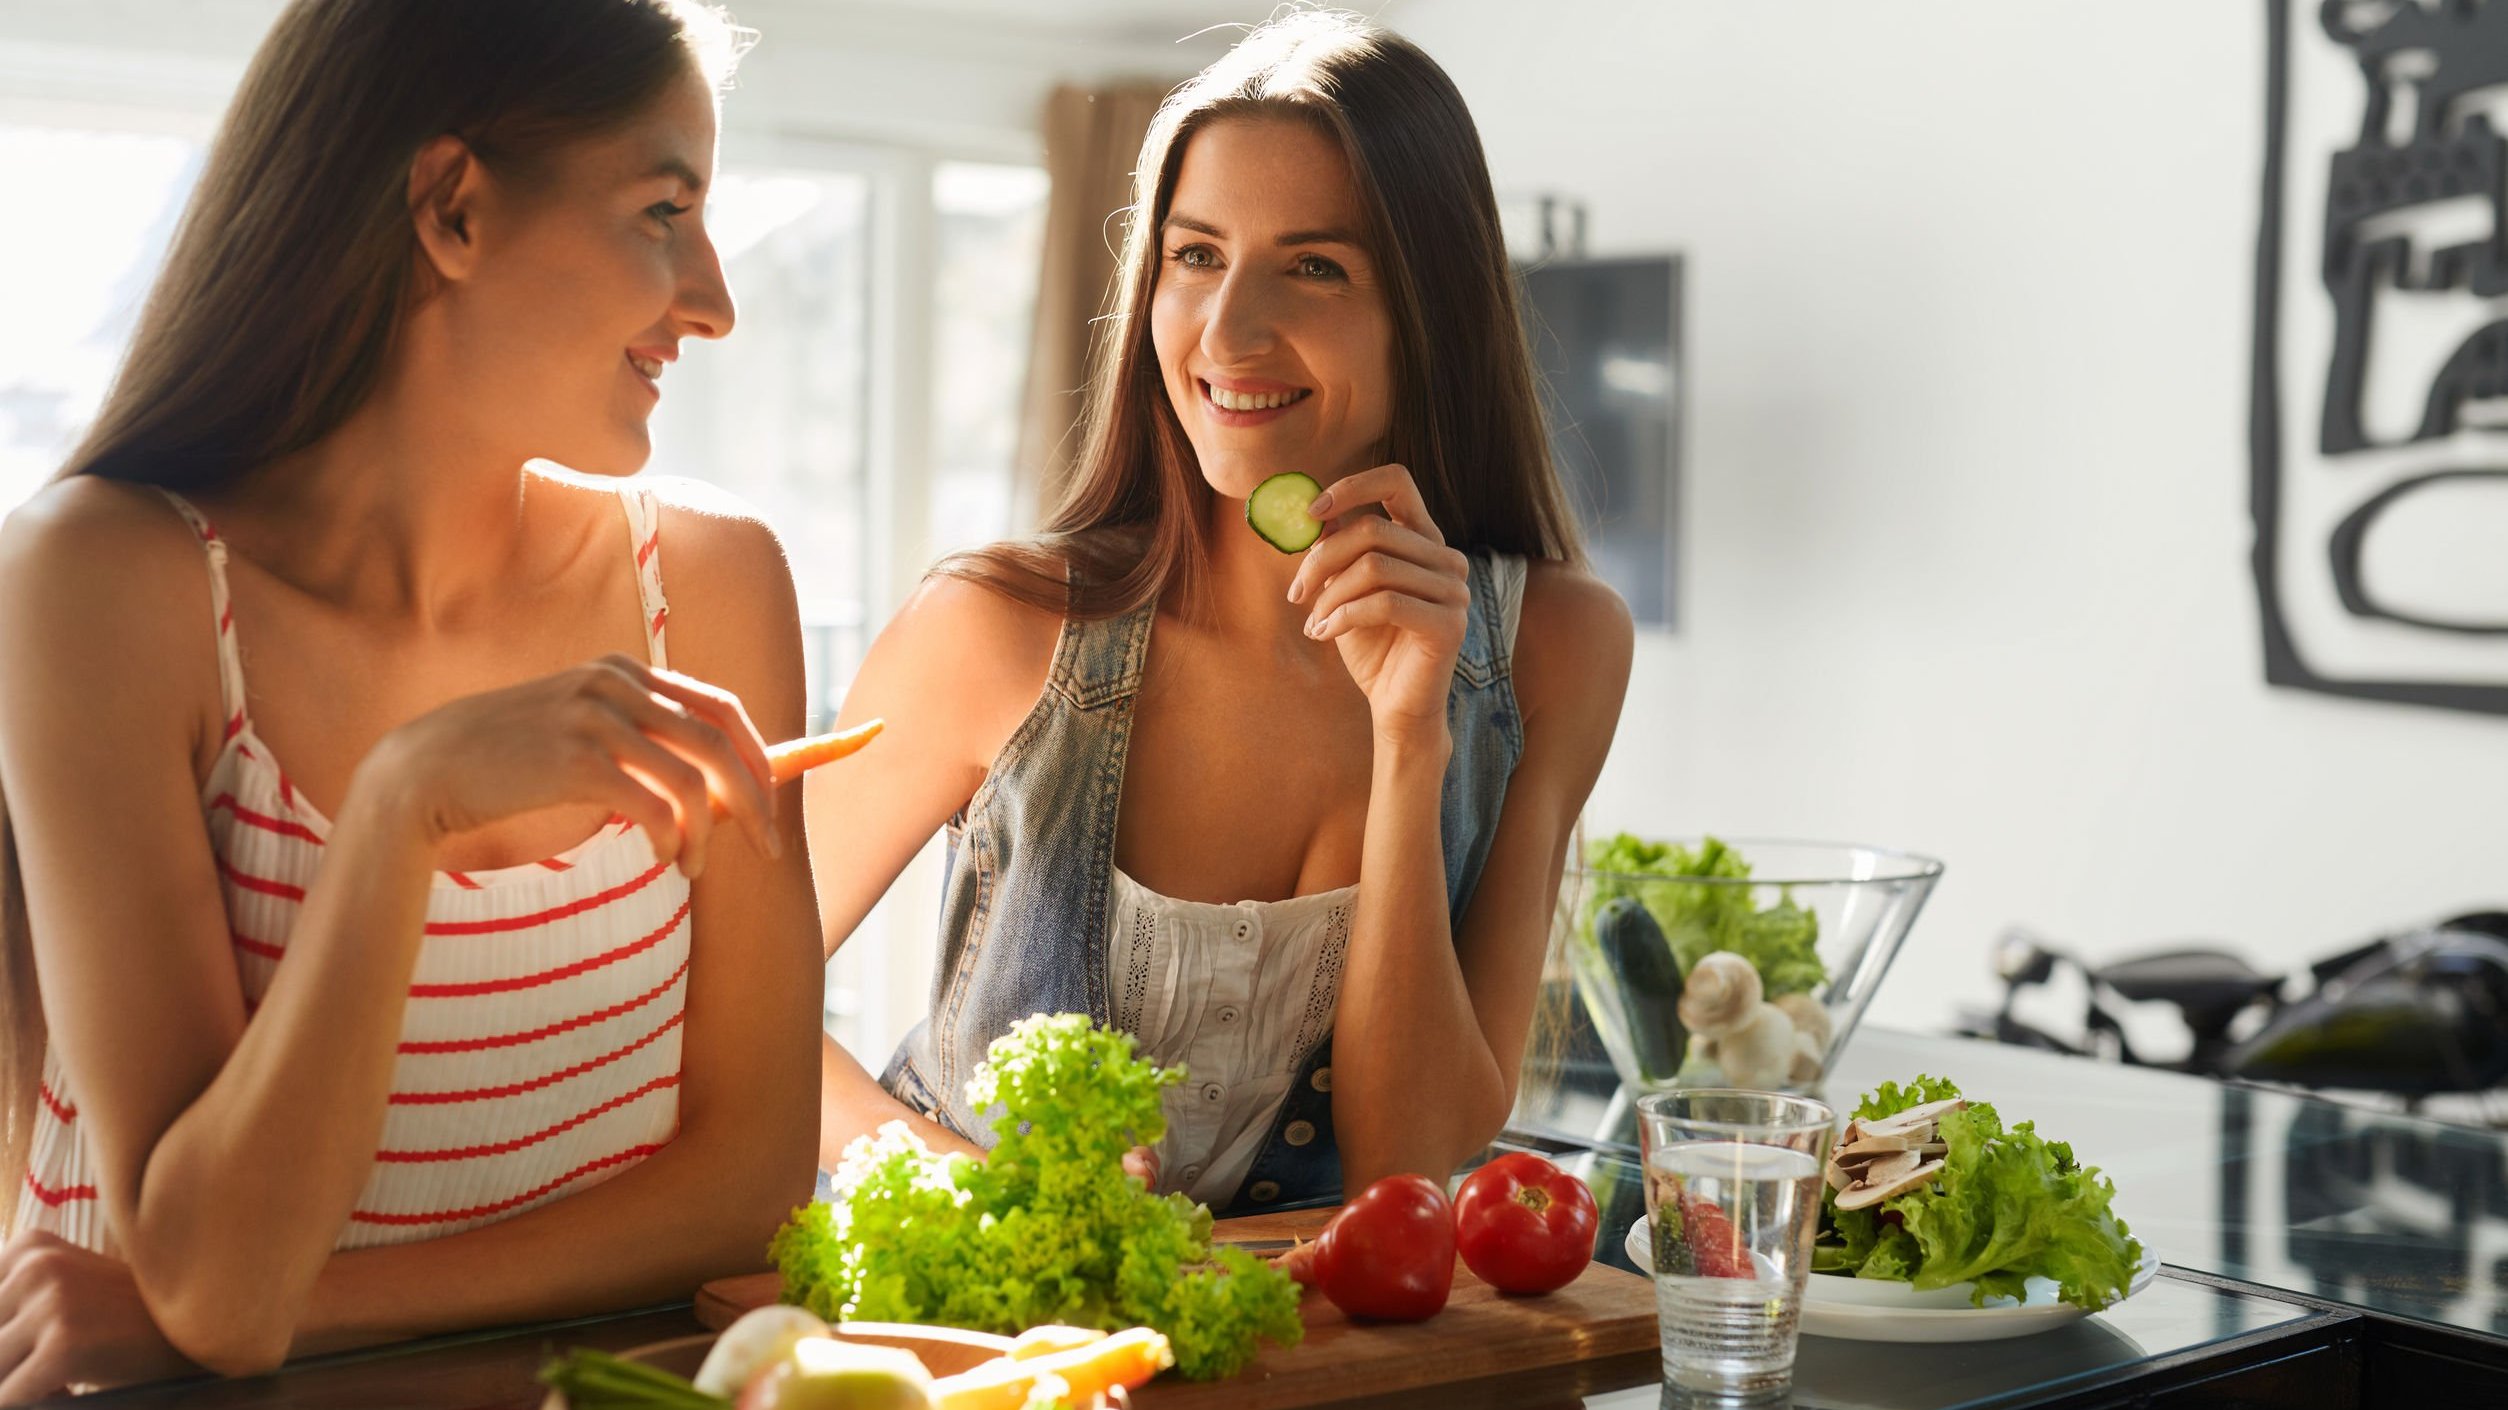 Duas mulheres brancas sentadas num banco comendo vegetais.